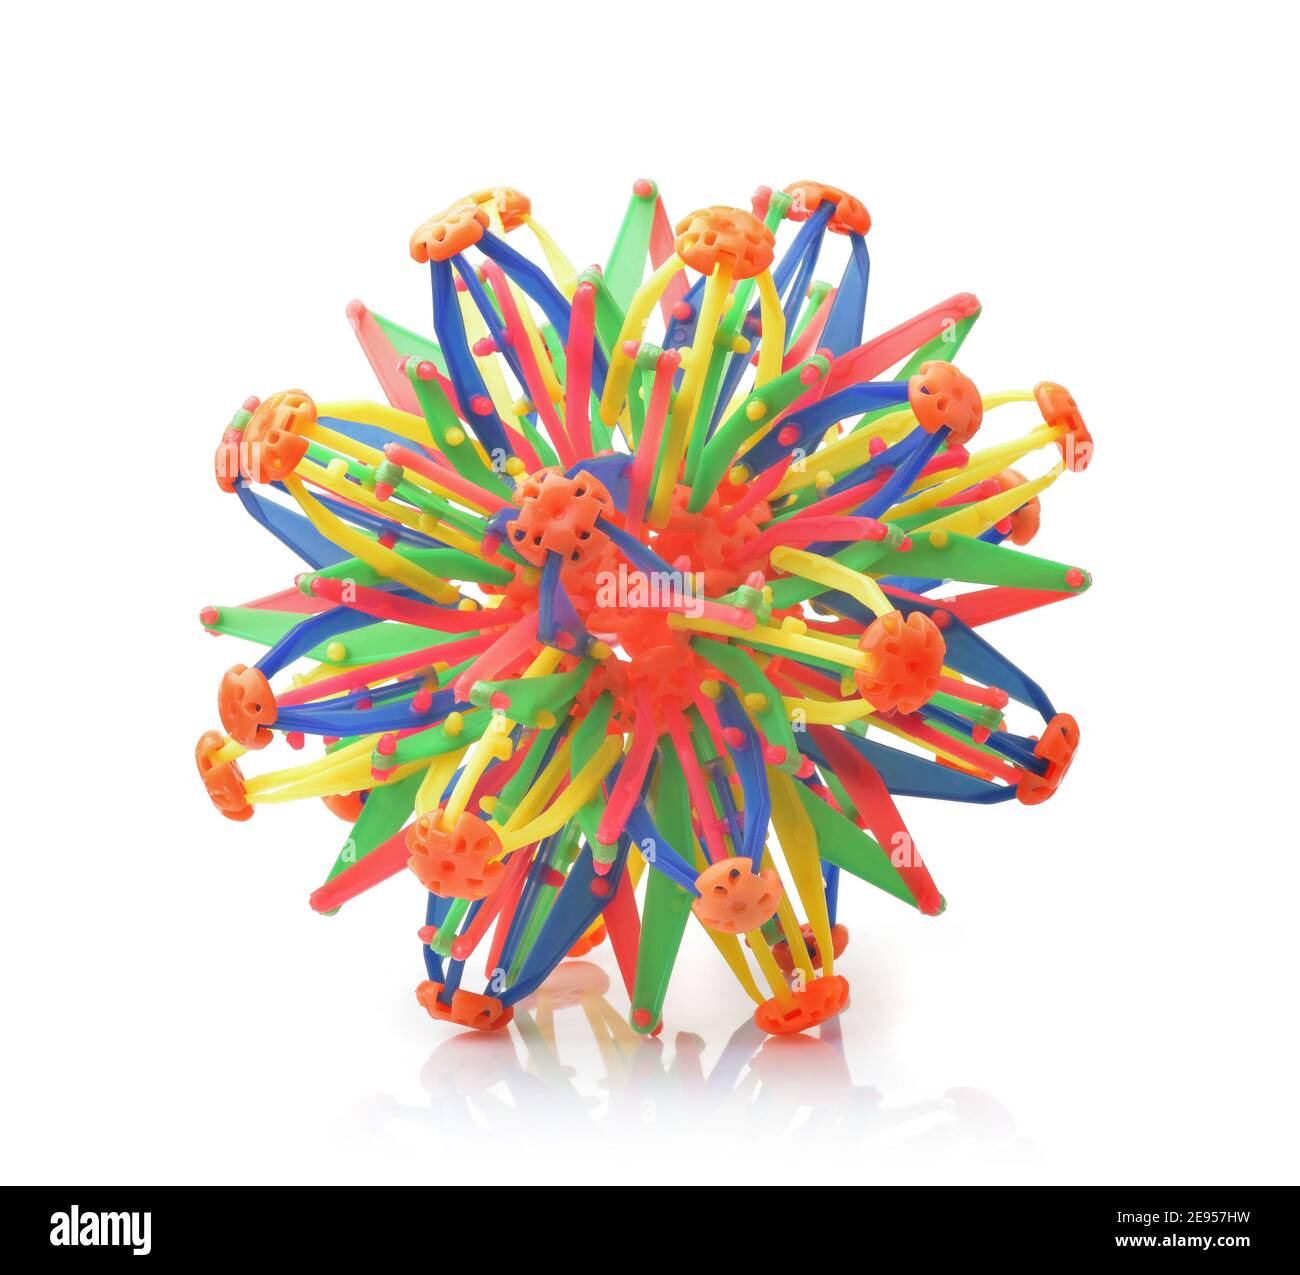 Sphère de jouet colorée transformable isolée sur blanc Banque D'Images